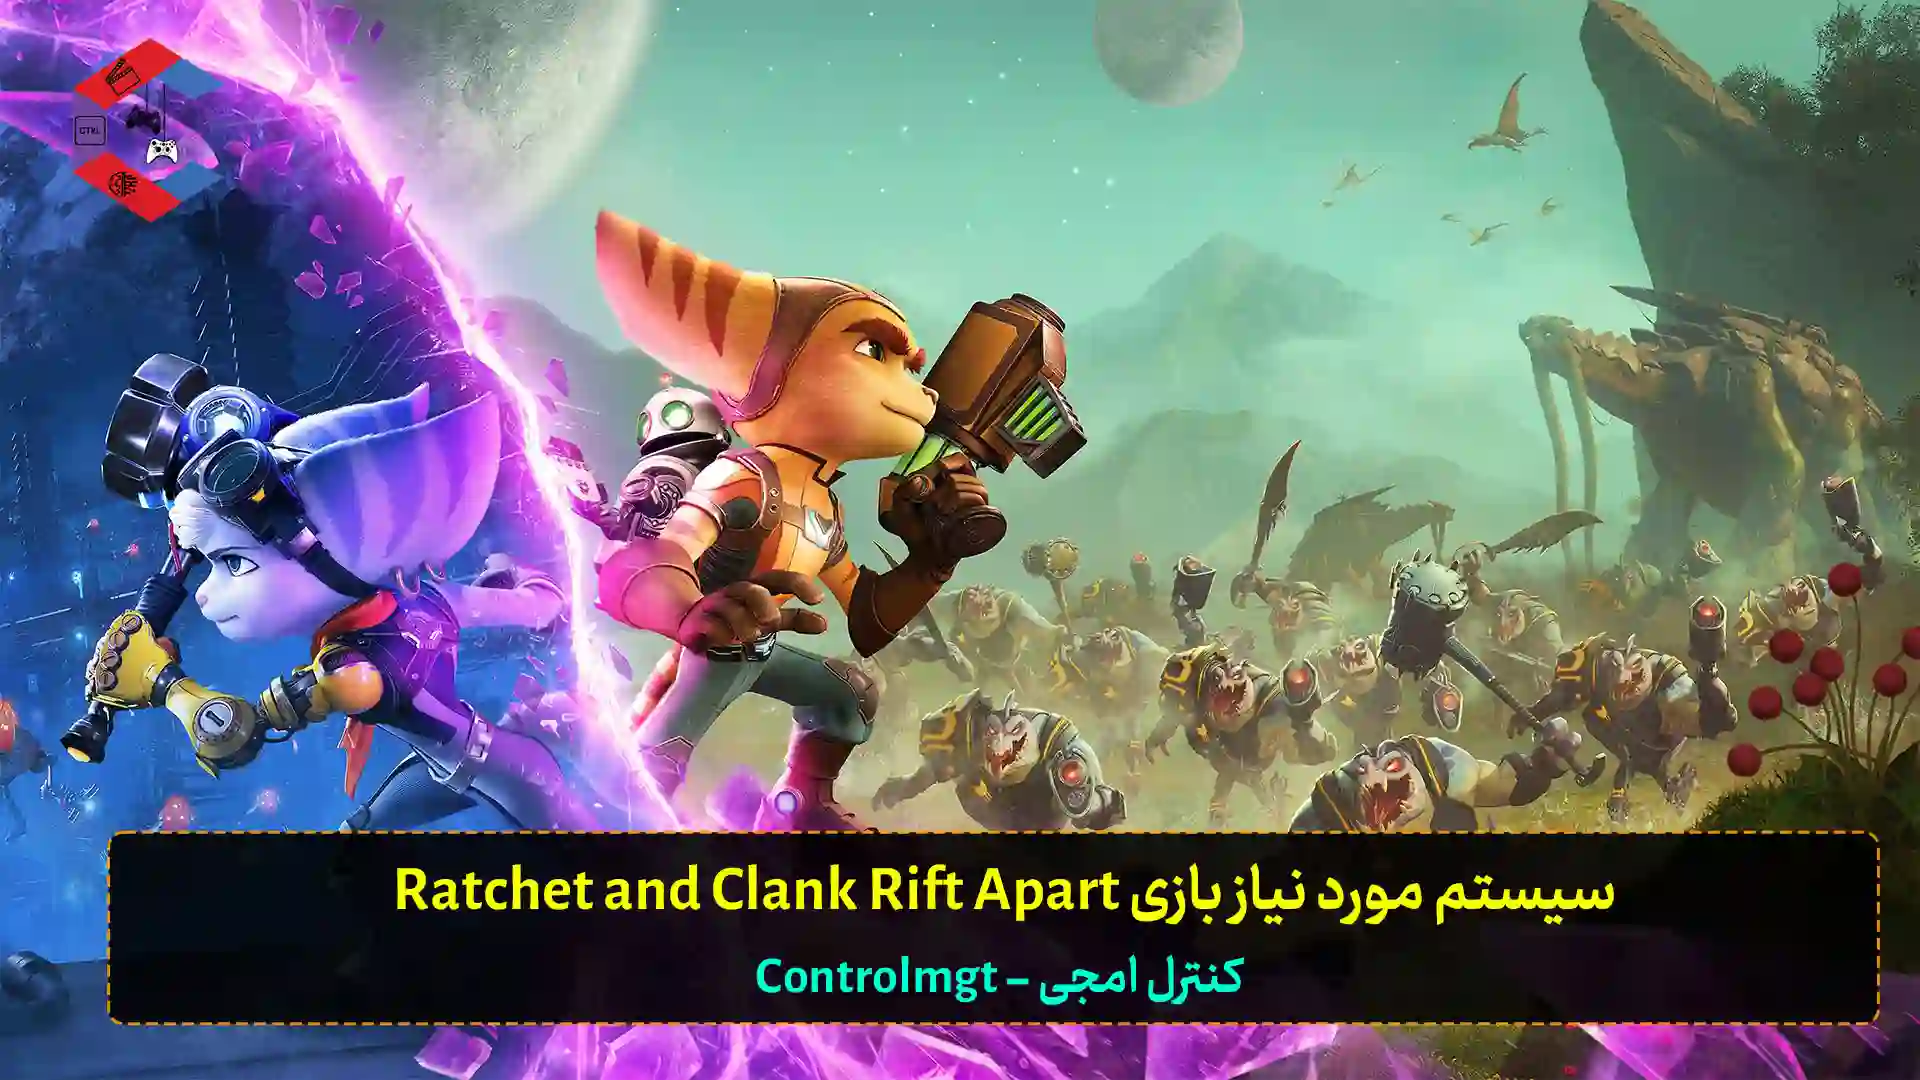 سیستم مورد نیاز بازی Ratchet and Clank Rift Apart